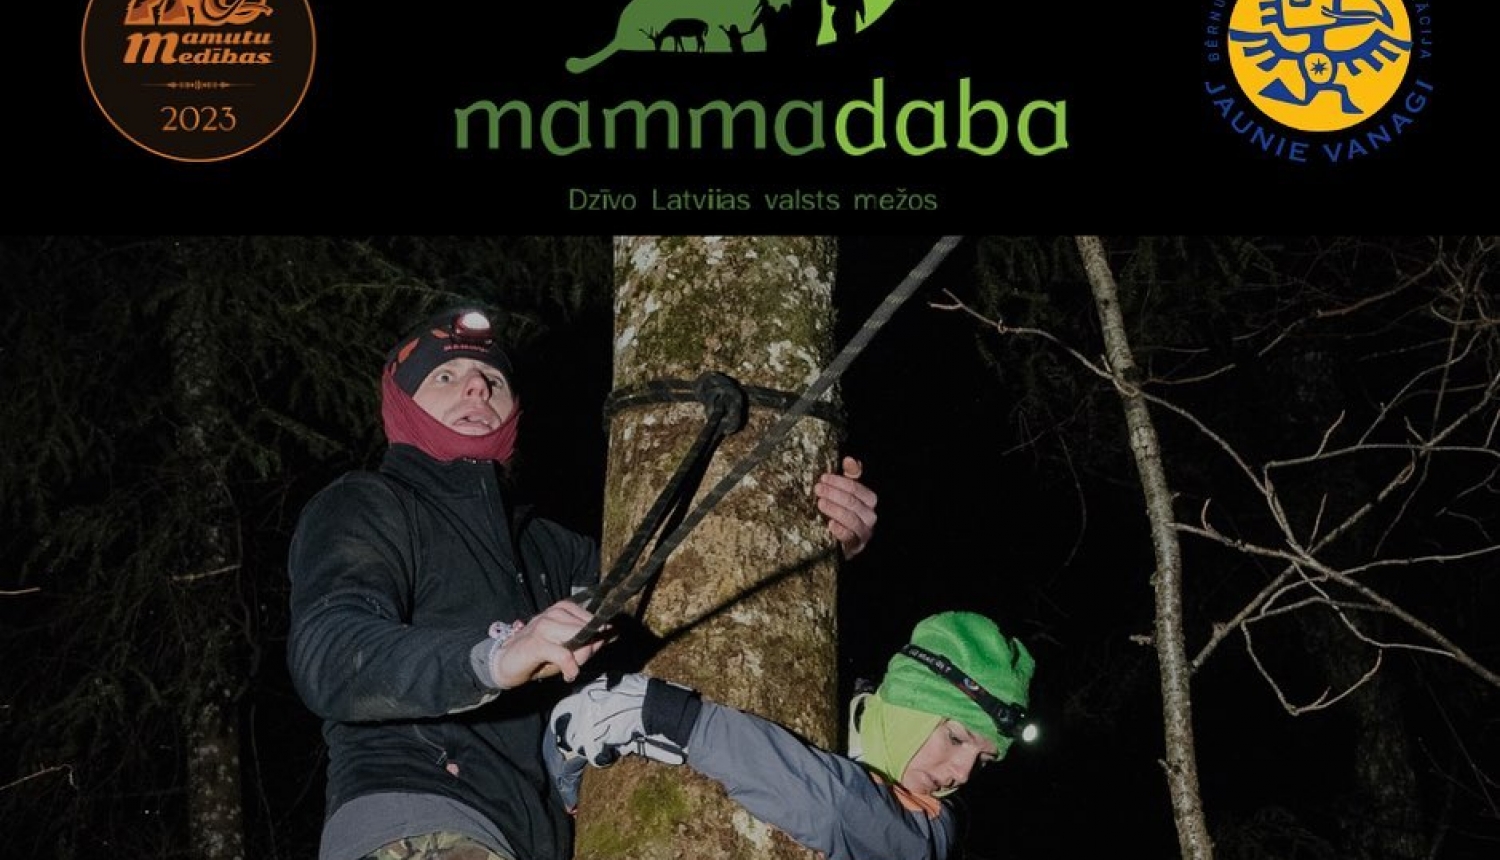 11.-12. februārī Kārķu pagastā notiks piedzīvojumu sacensības “Mamutu medības 2023”